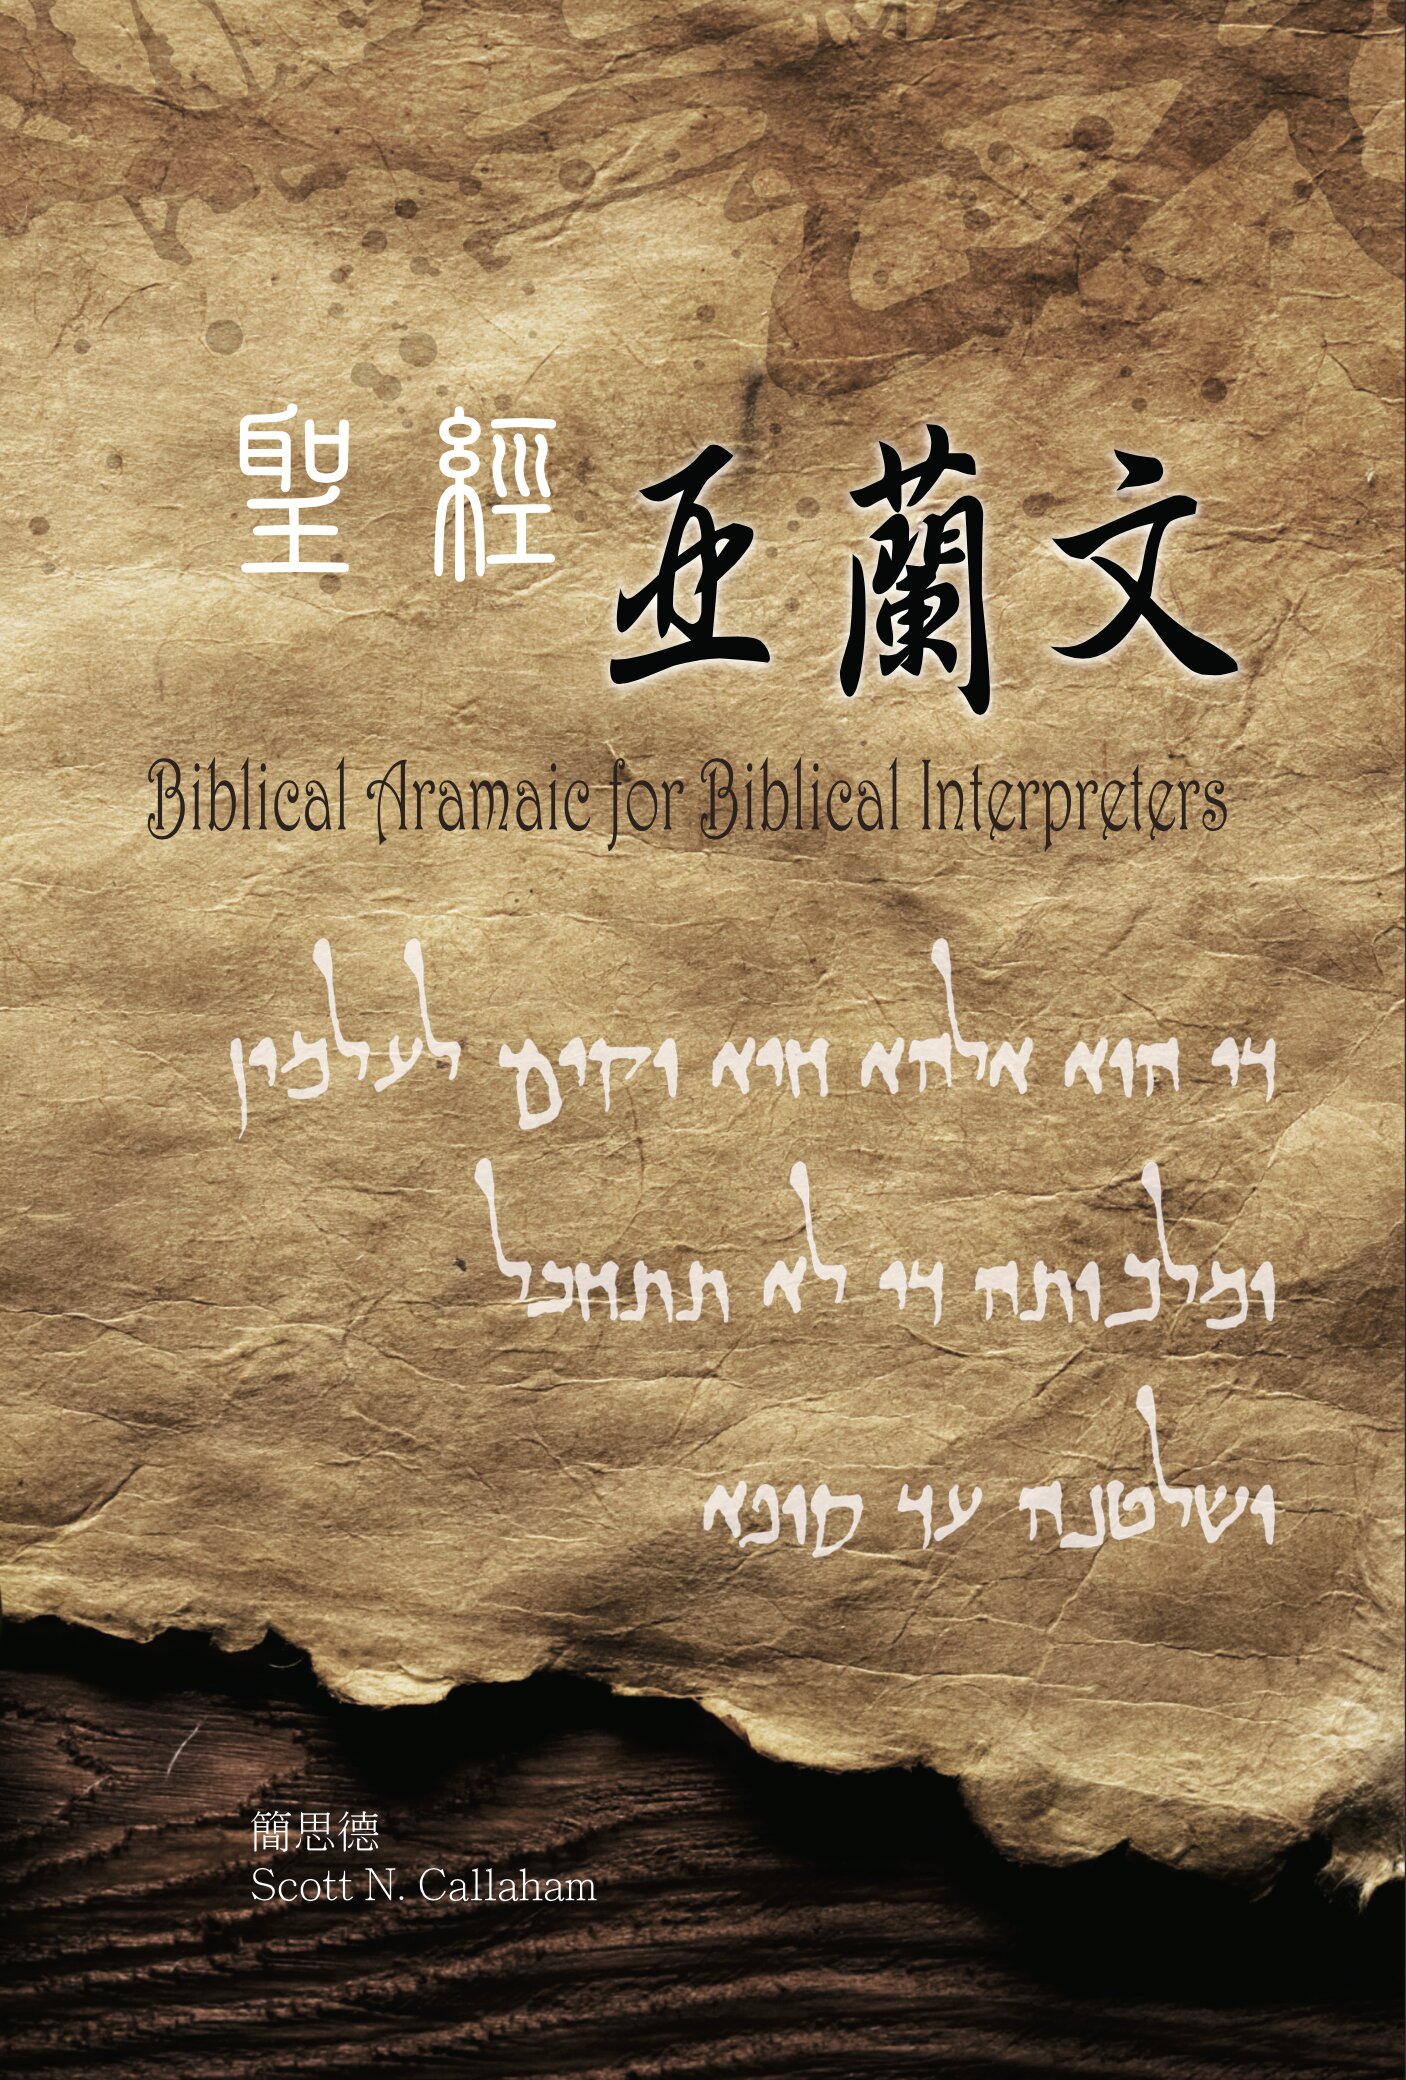 聖經亞蘭文-亞蘭文部分（繁體）Biblical Aramaic for Biblical Interpreters (Aramaic section, Traditional Chinese）